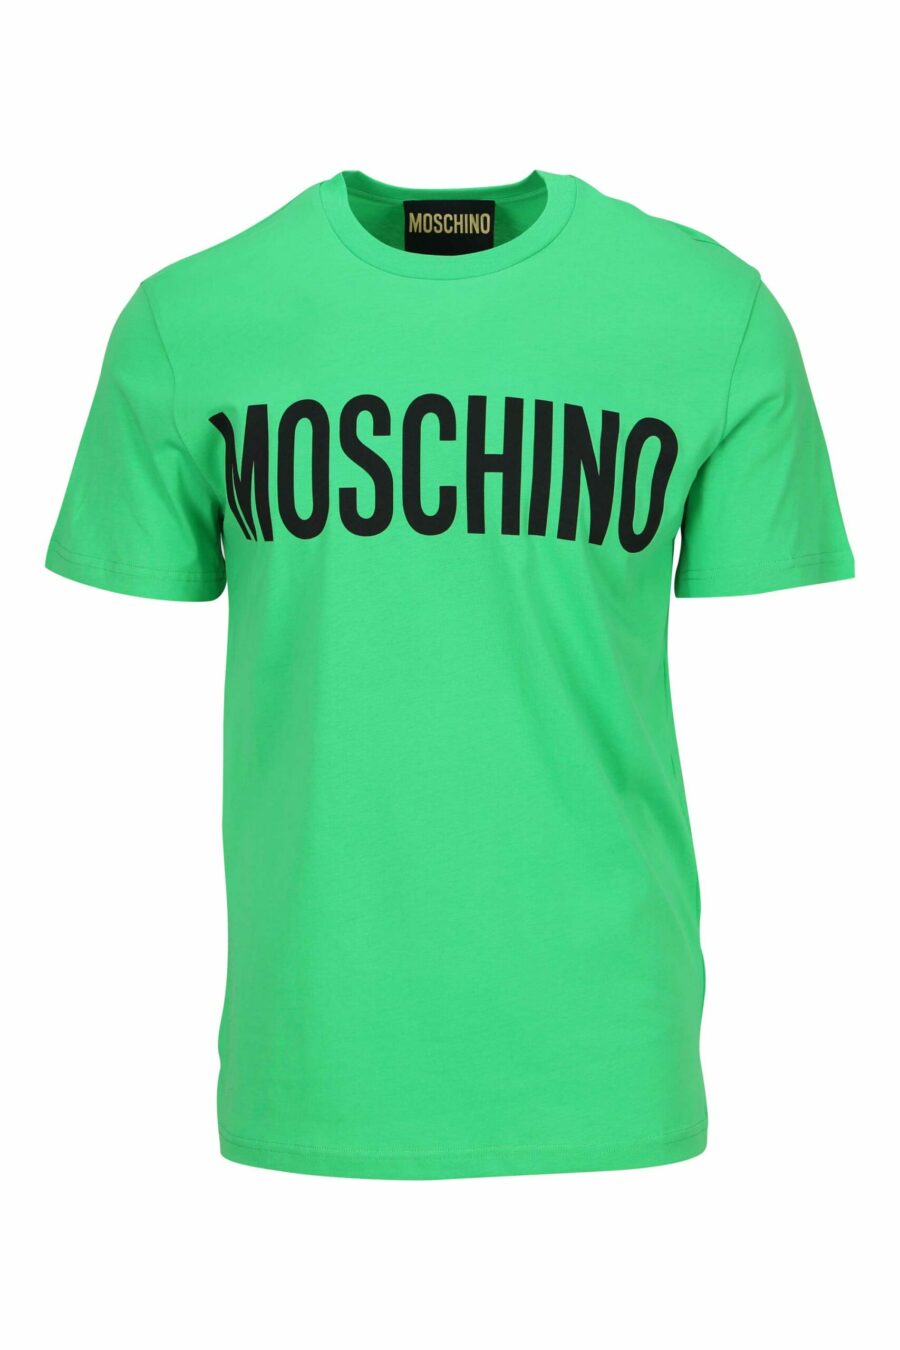 Camiseta verde claro de algodón orgánico con maxilogo negro clásico - 667113751917 scaled